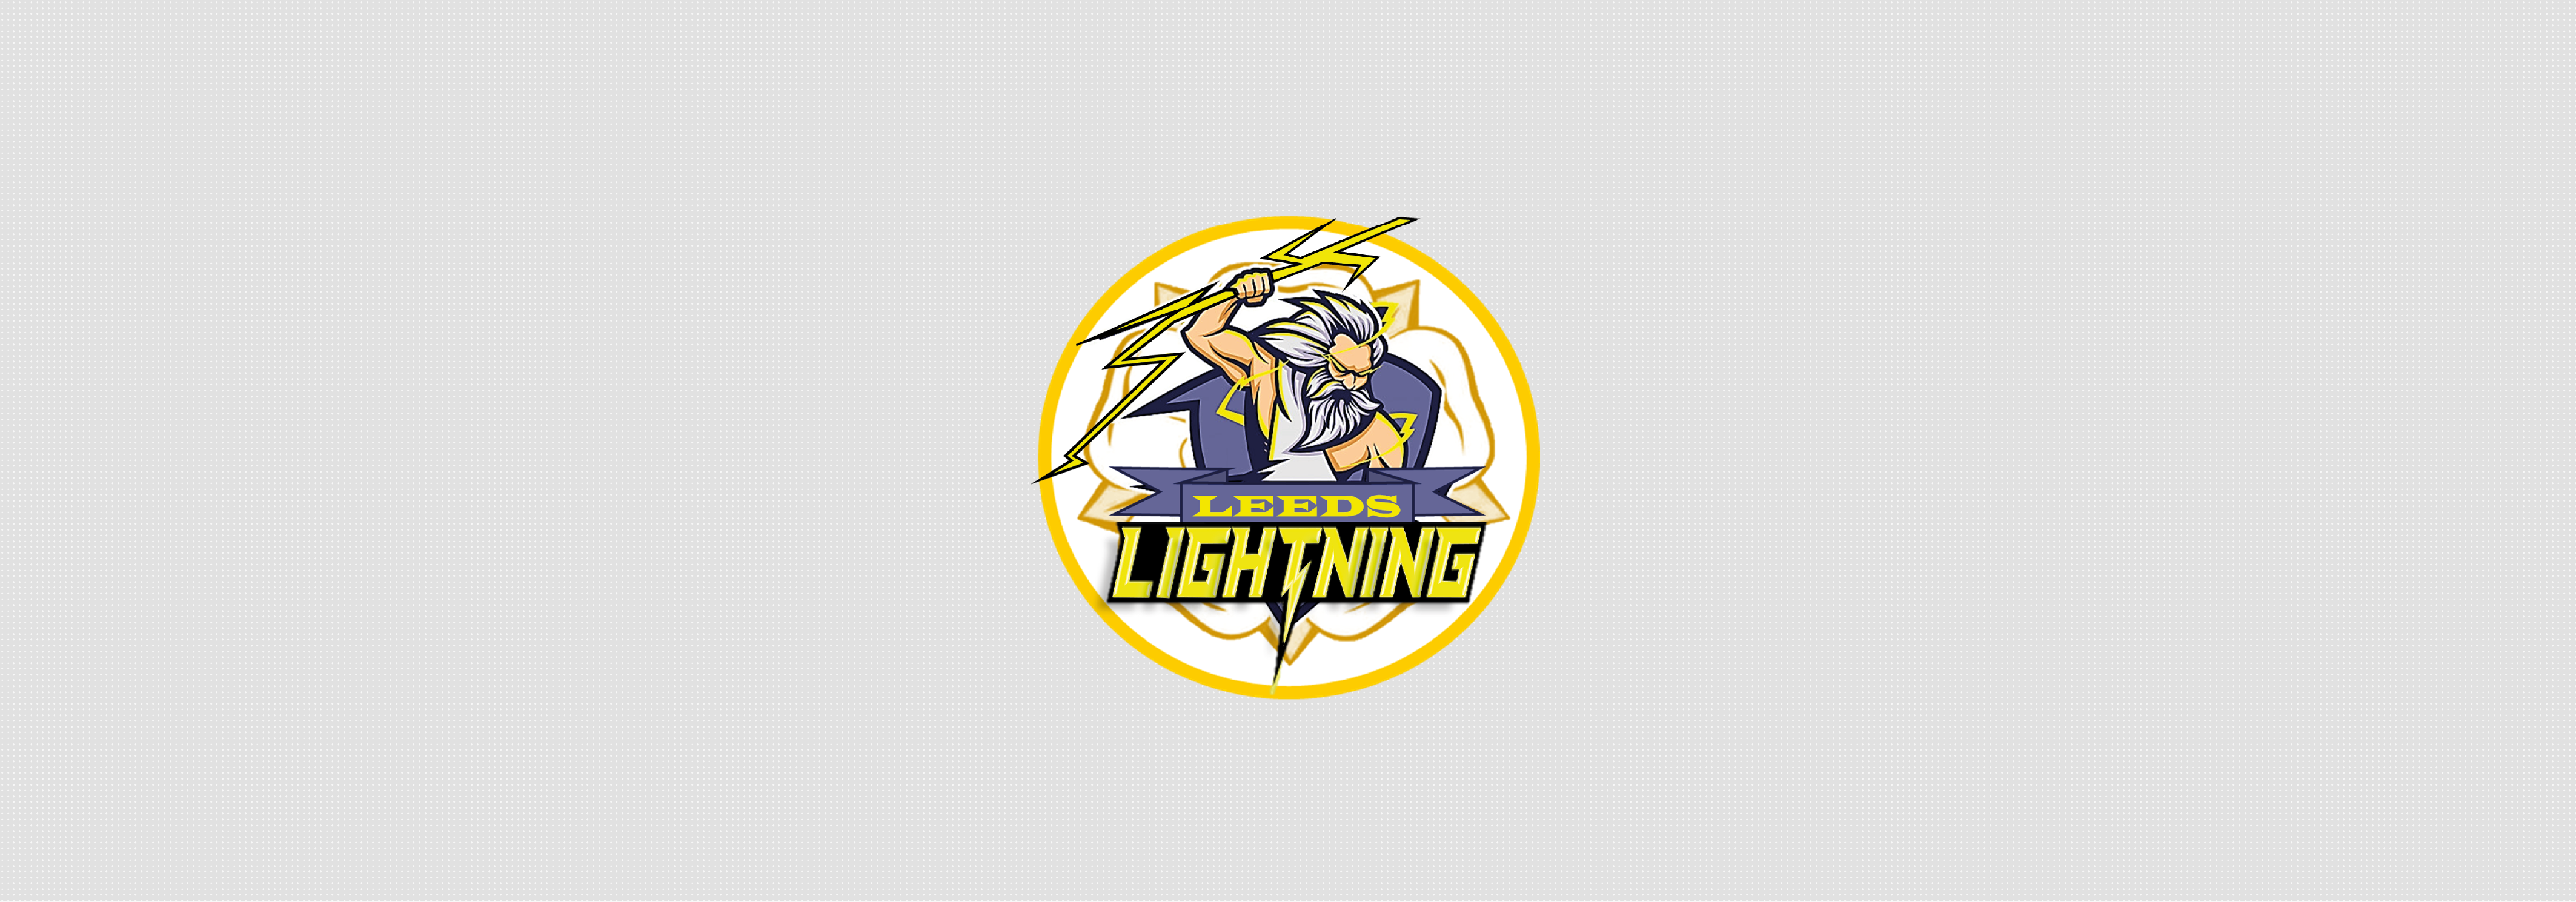 Leeds Lightning Replica Jersey – Home